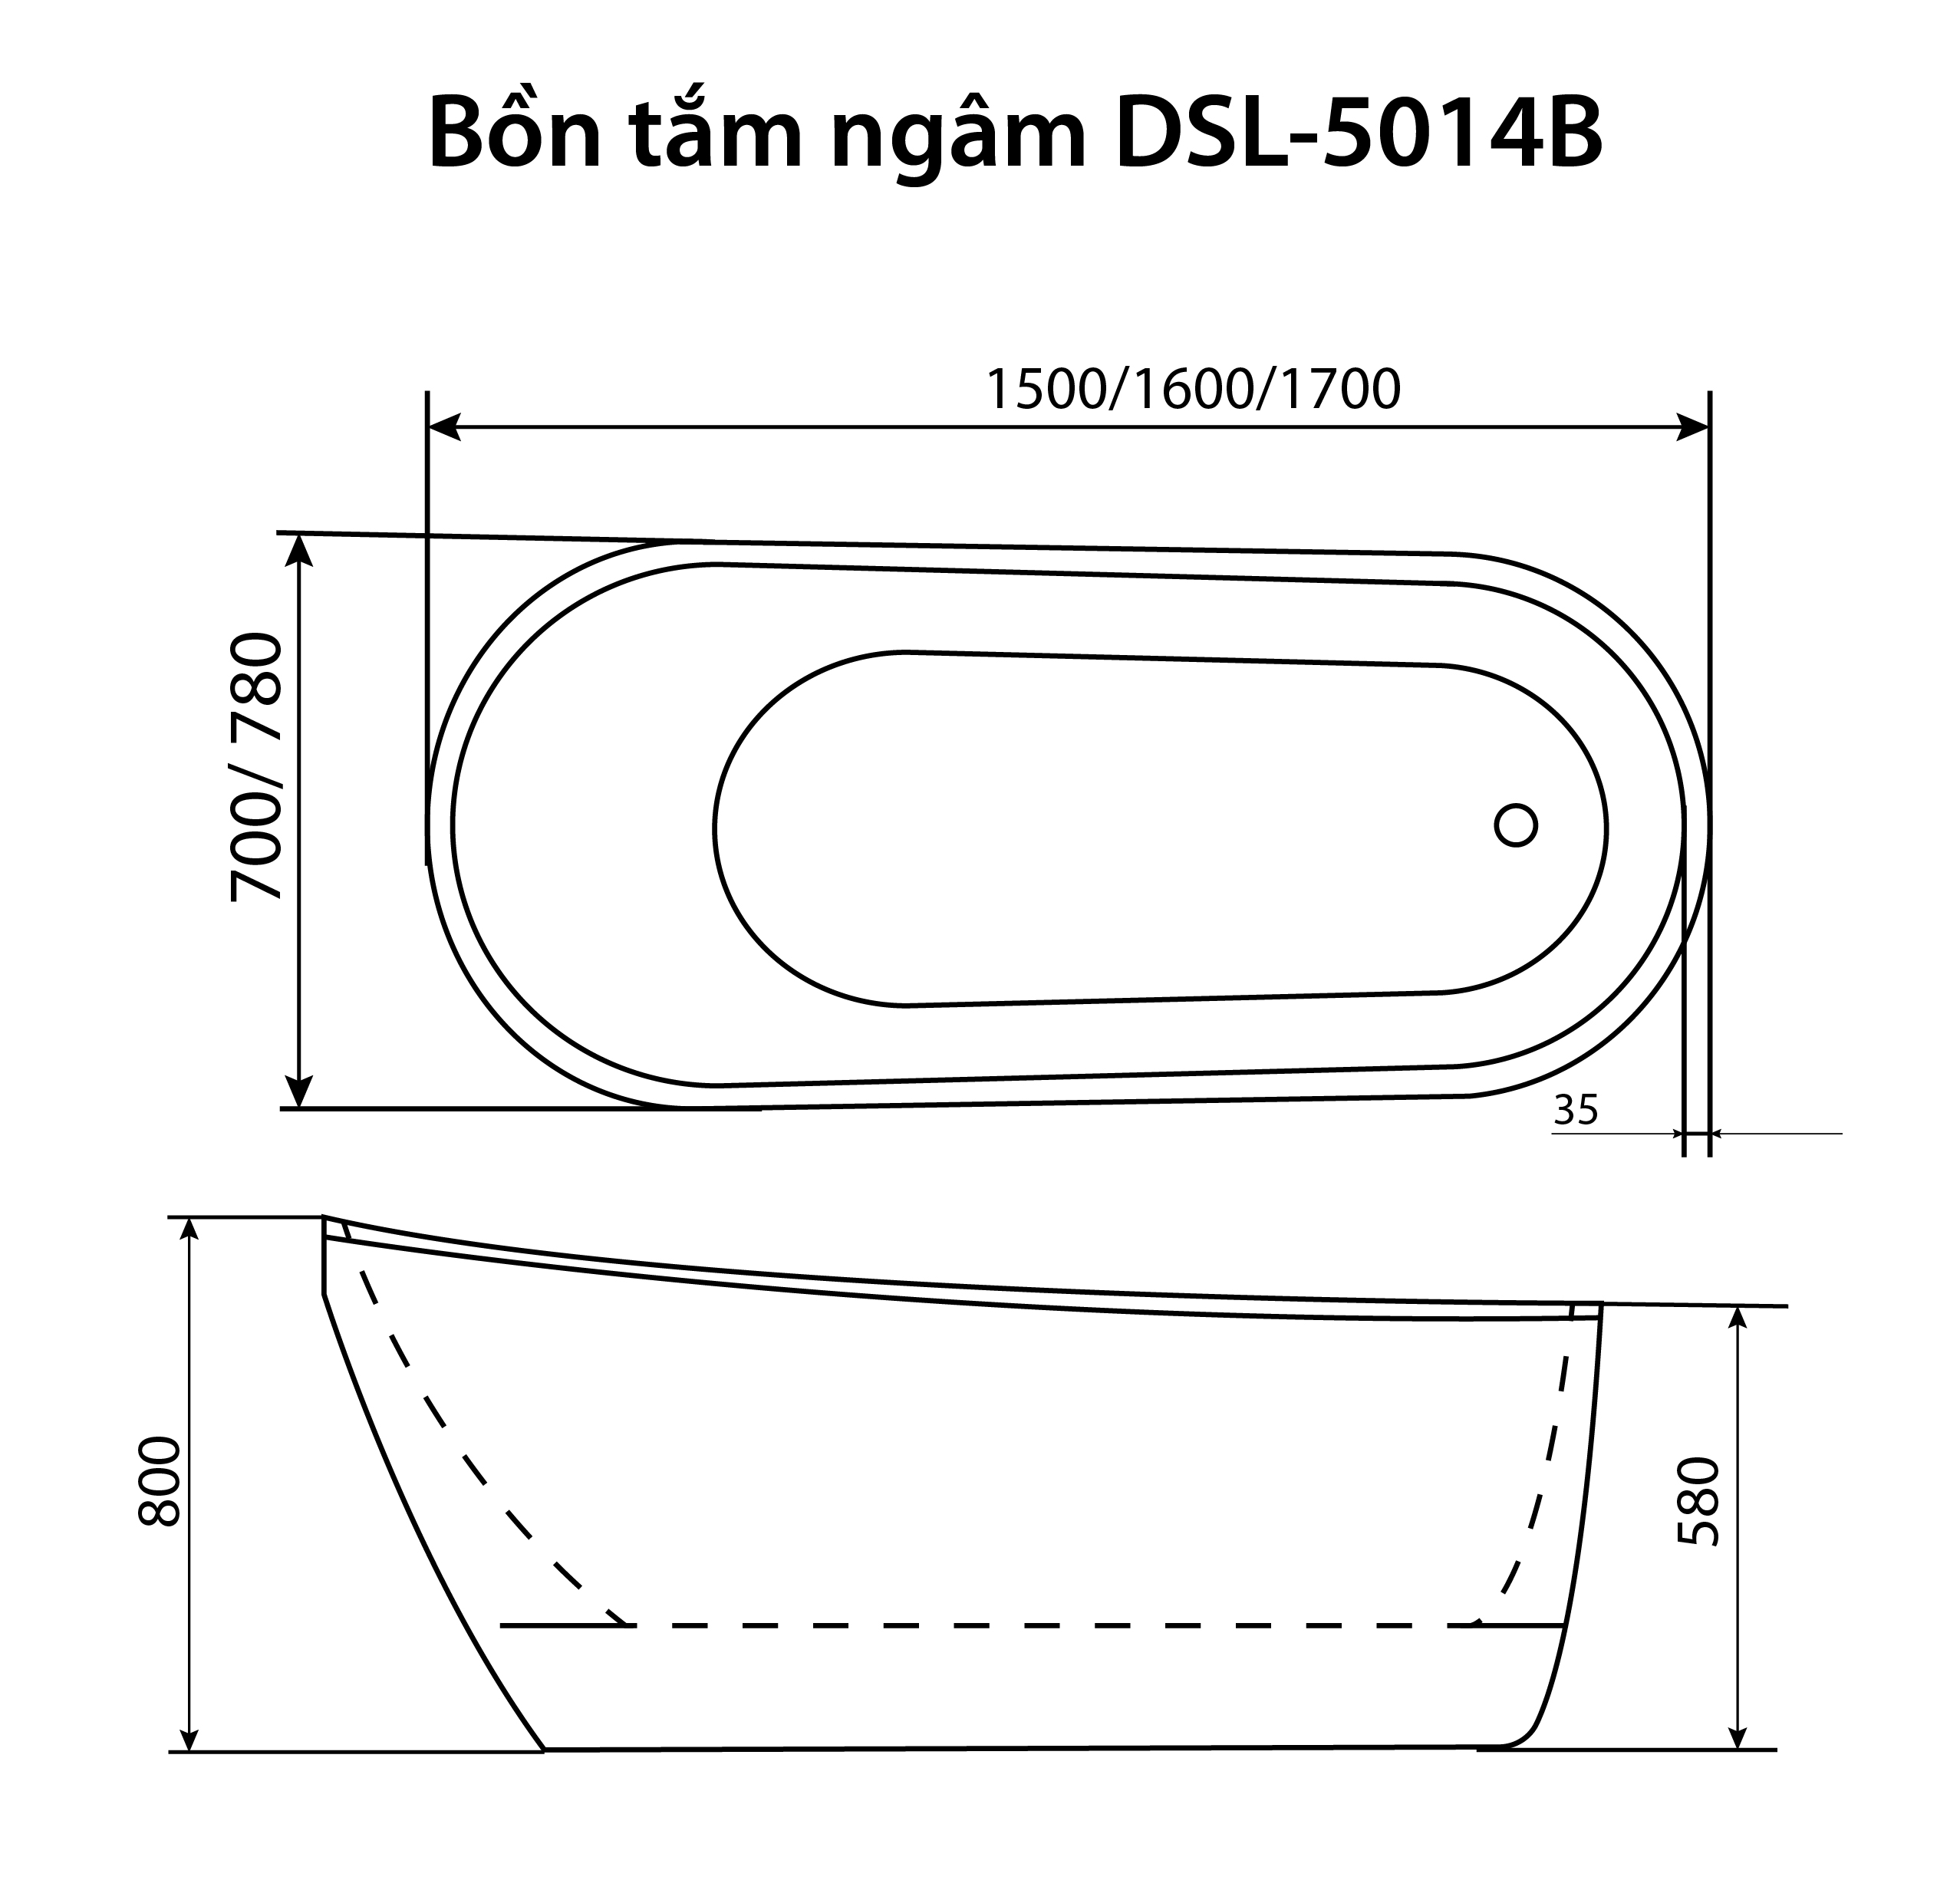 Bon Tam Ngam DSL 5014b